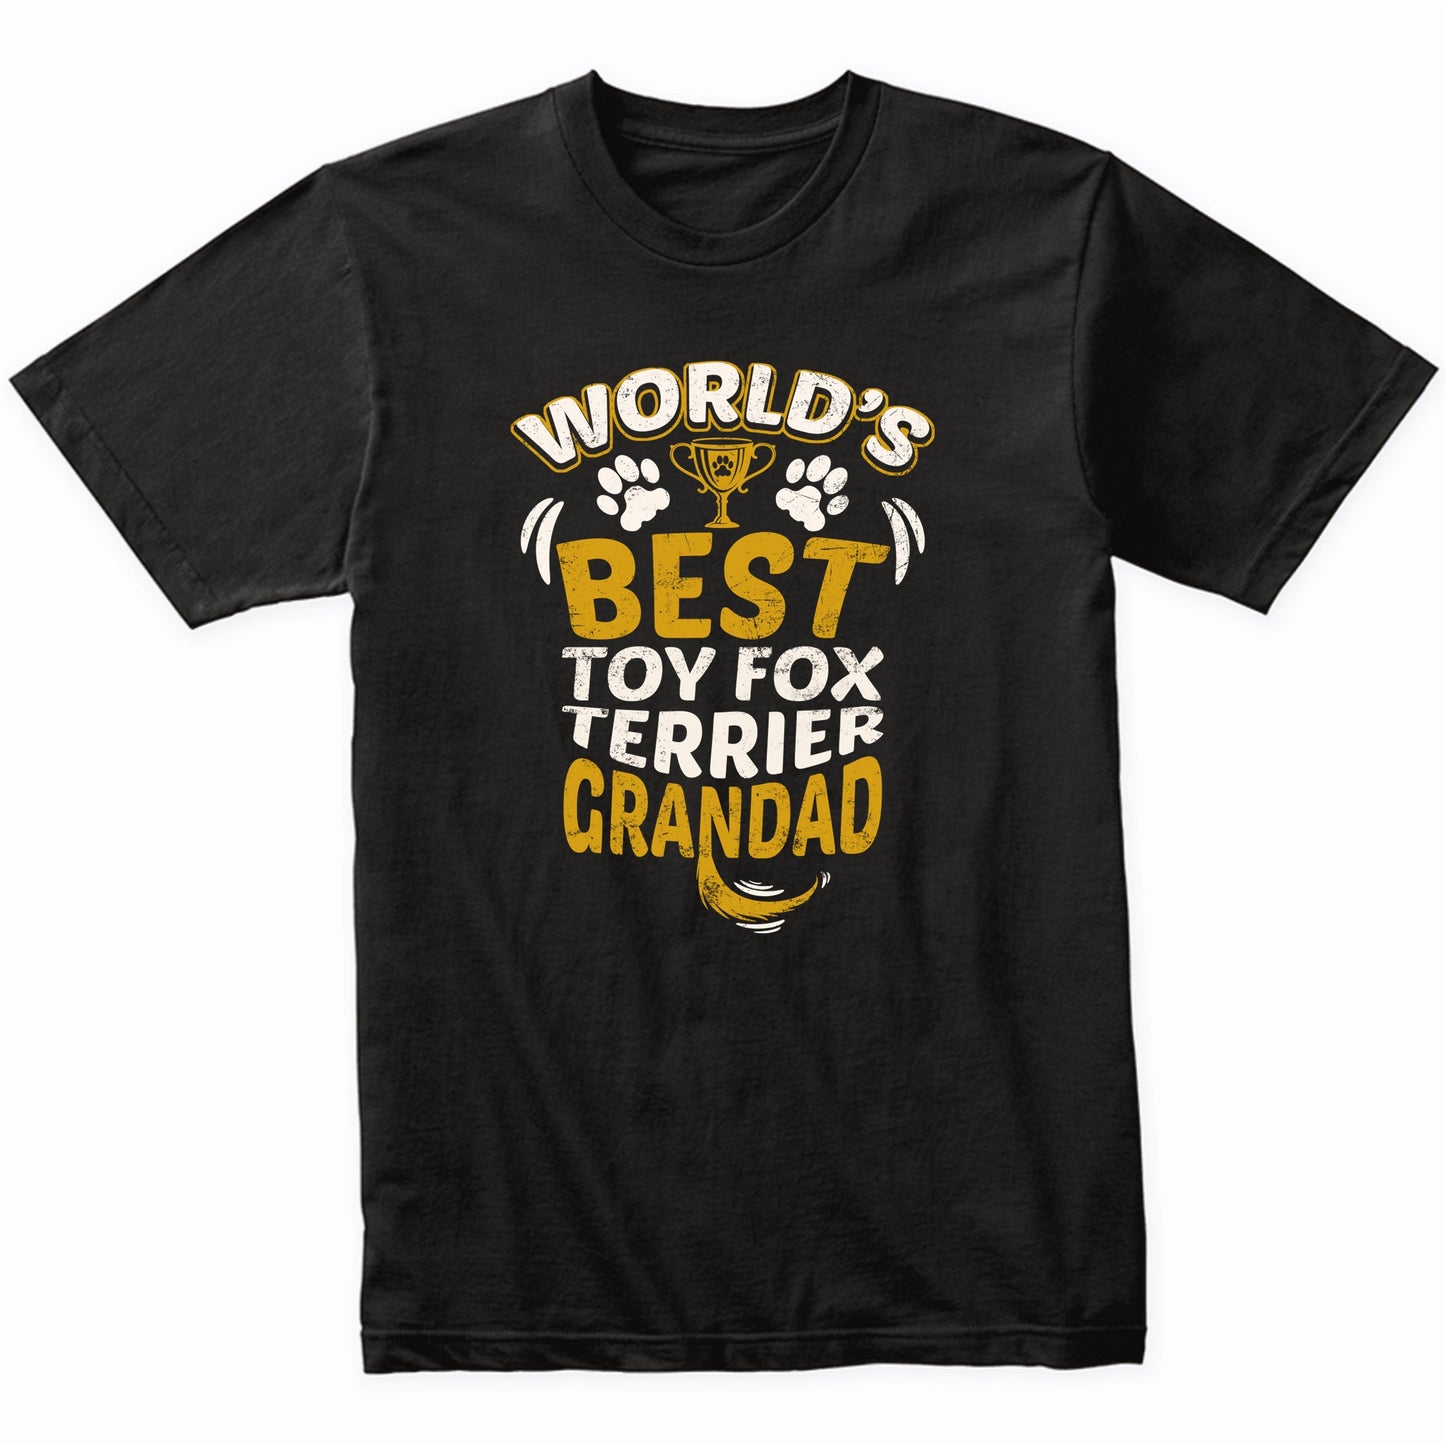 World's Best Toy Fox Terrier Grandad Graphic T-Shirt